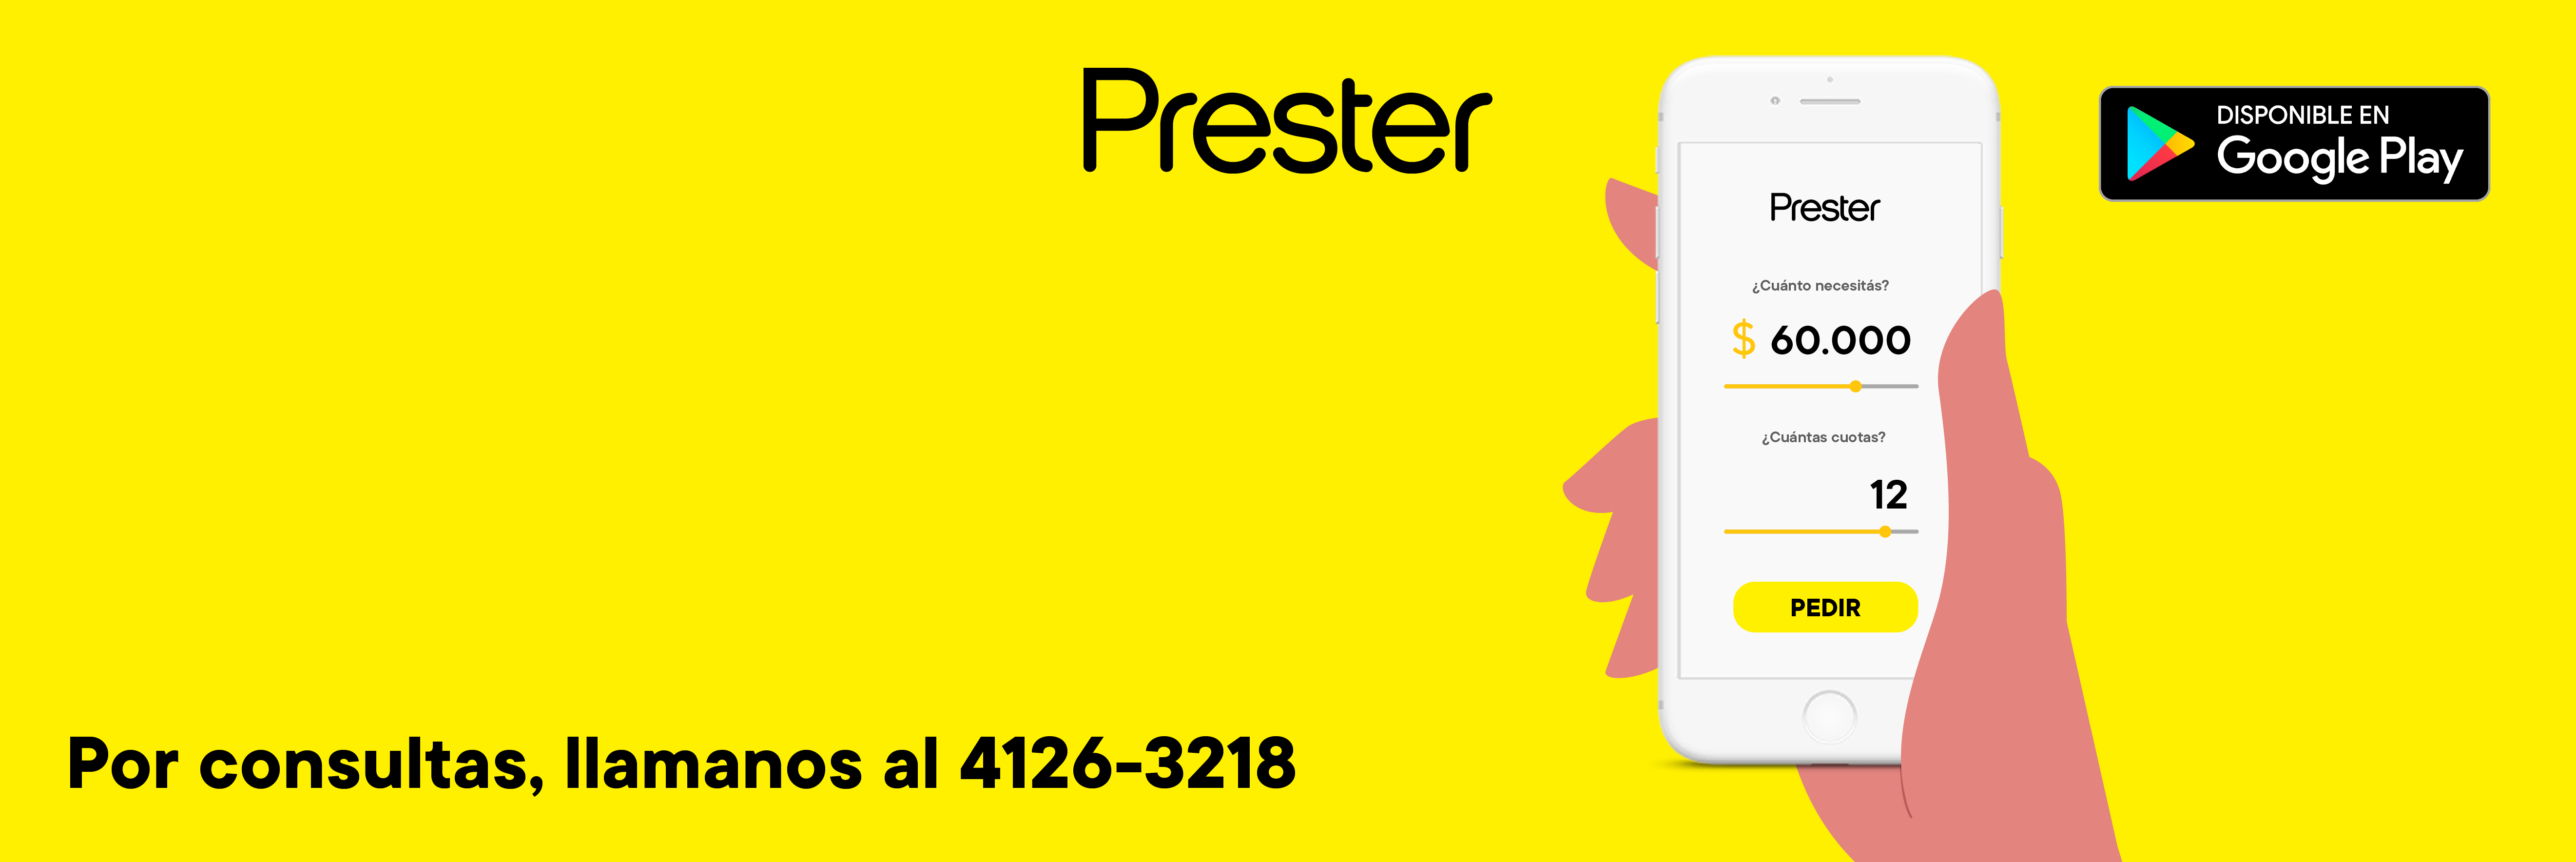 Prester